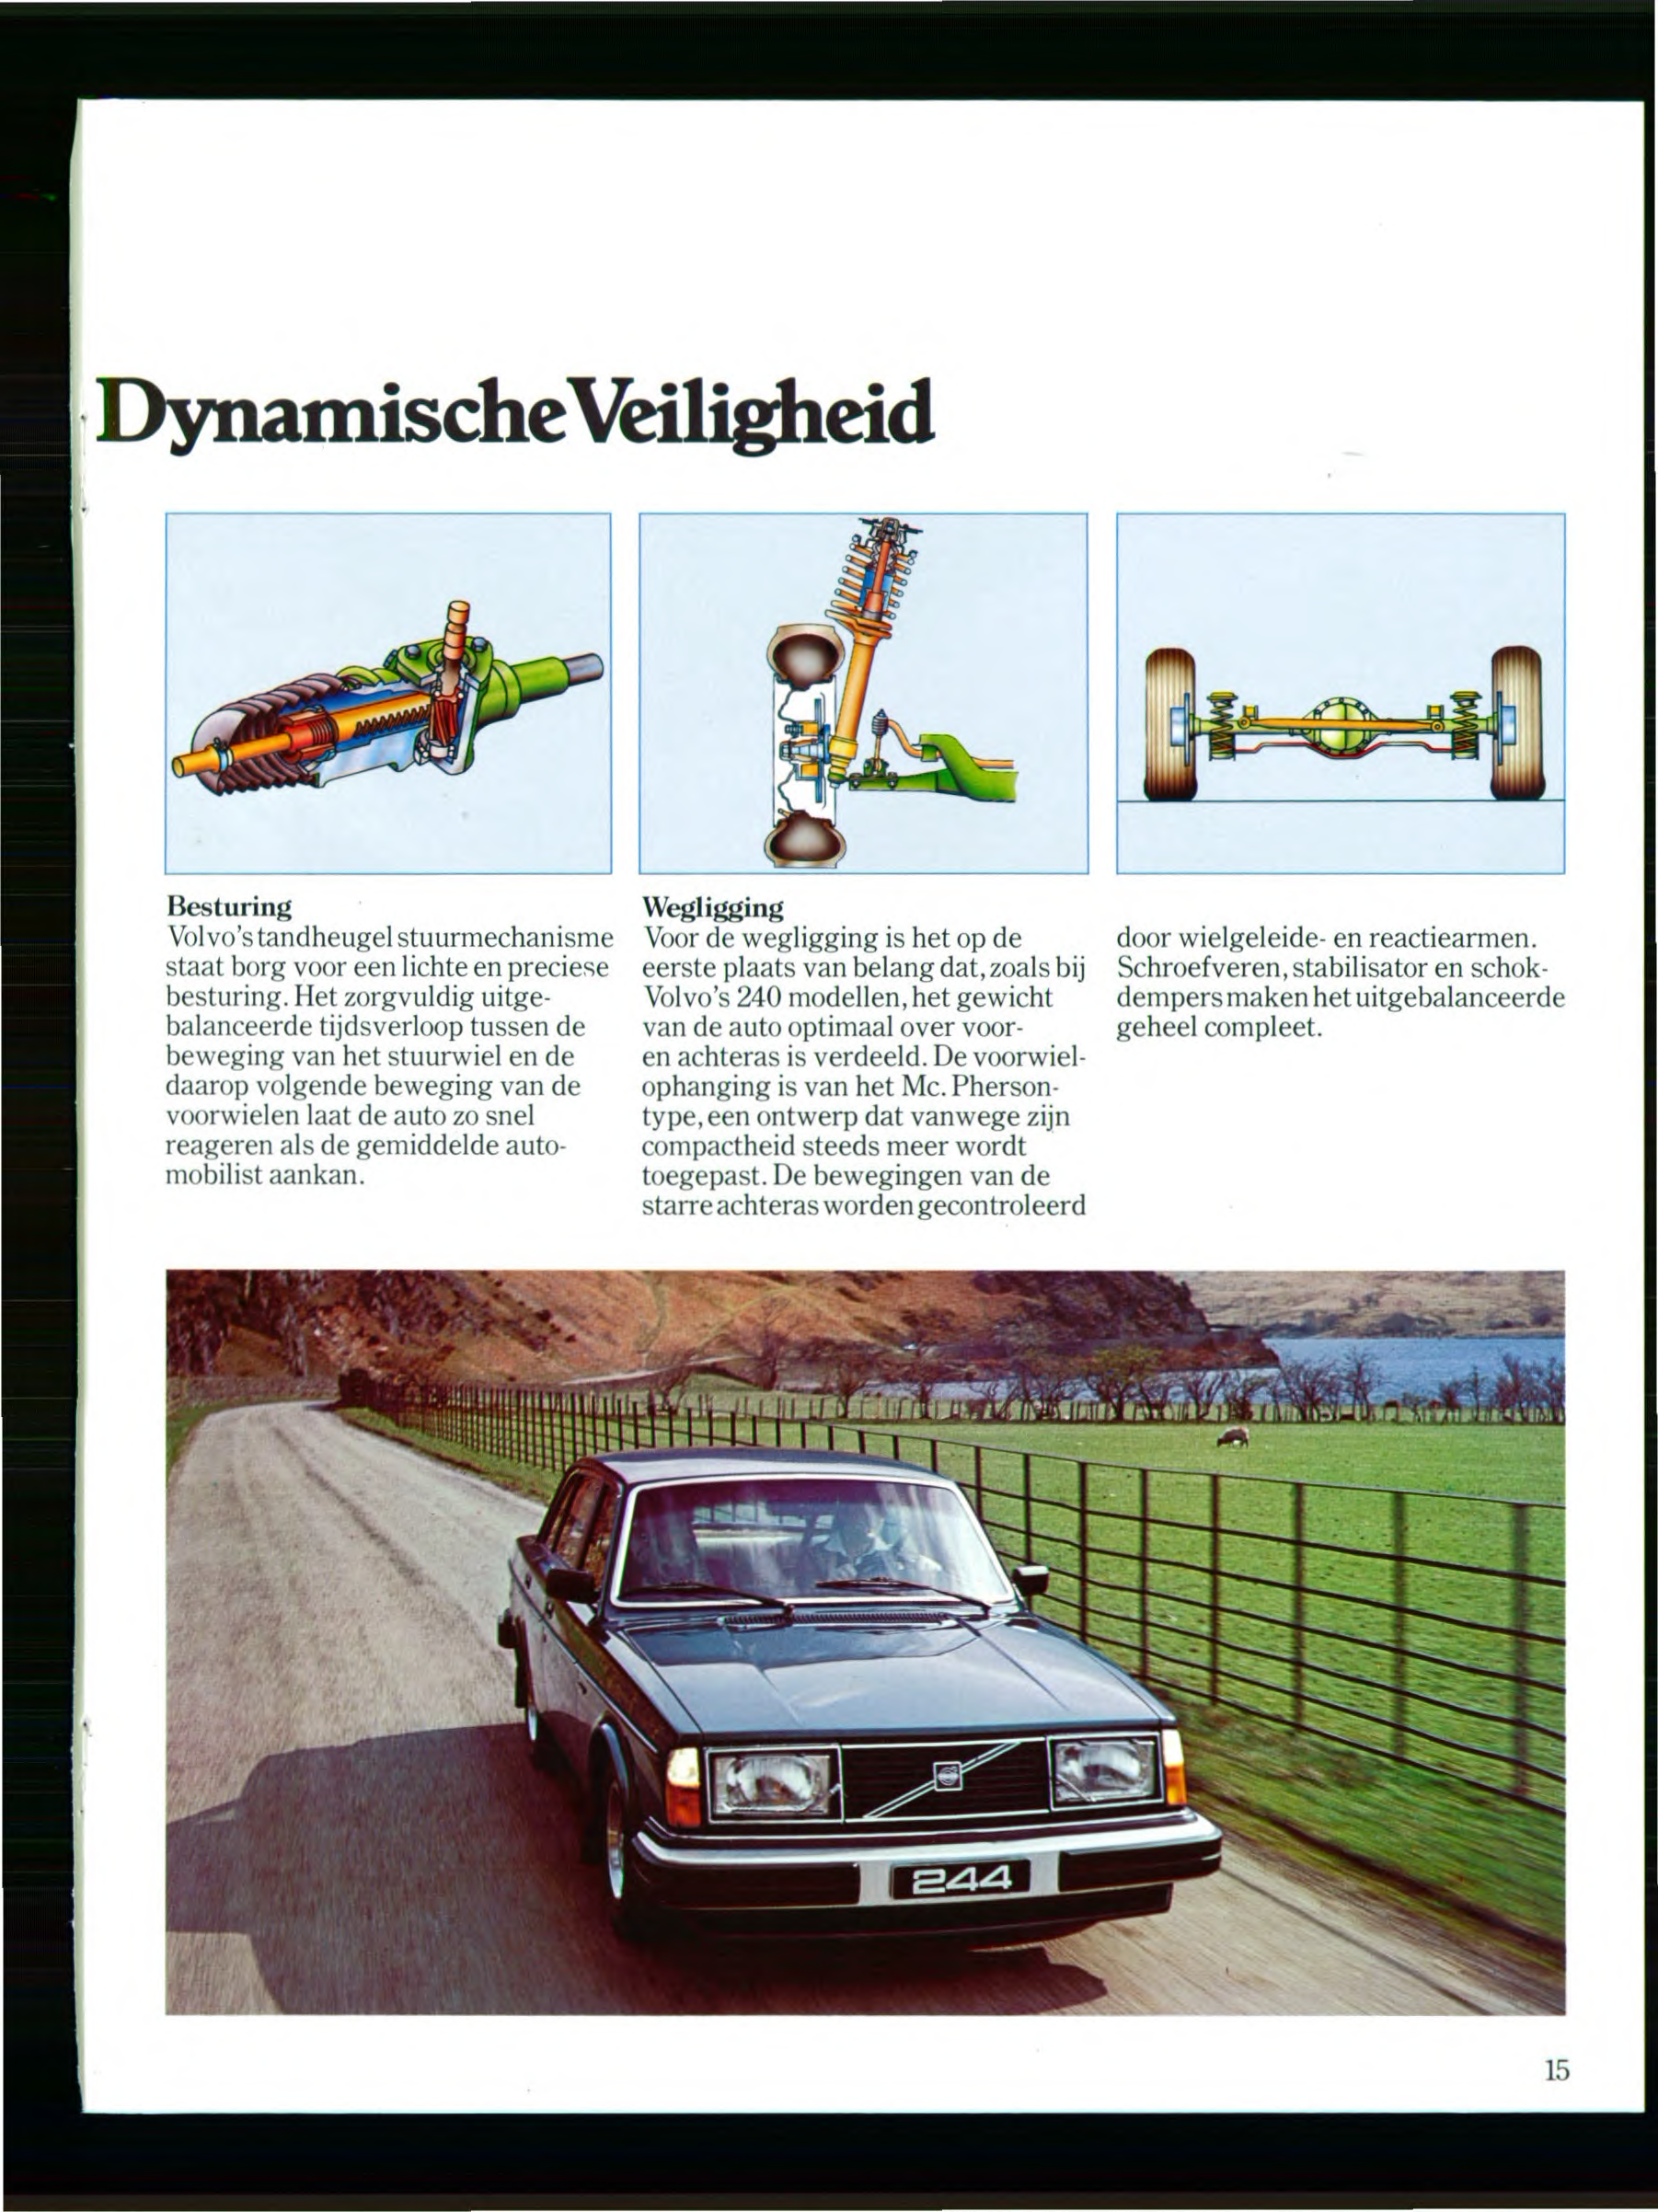 ,DynamischeVeiligheid Besturing Volvo's tandheugel stuurmechanisme staat borg voor een lichte en preciese besturing.